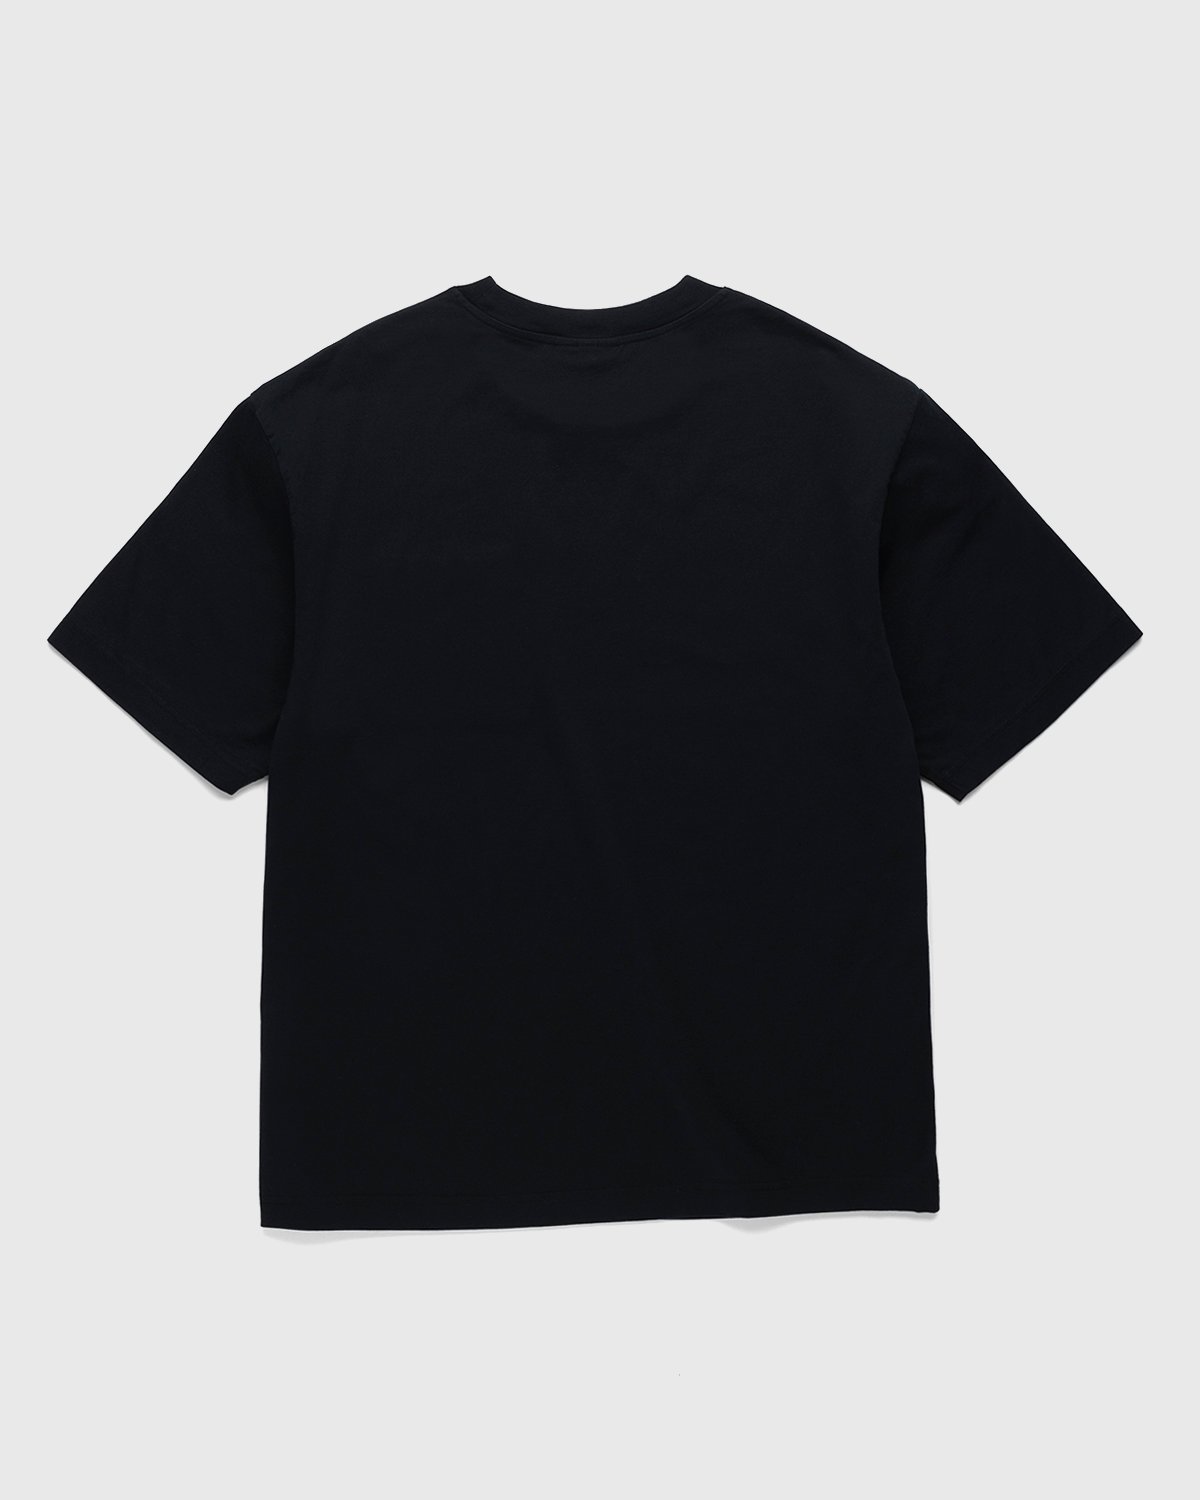 Acne Studios - Short Sleeve Pocket T-Shirt Black - Clothing - Black - Image 2